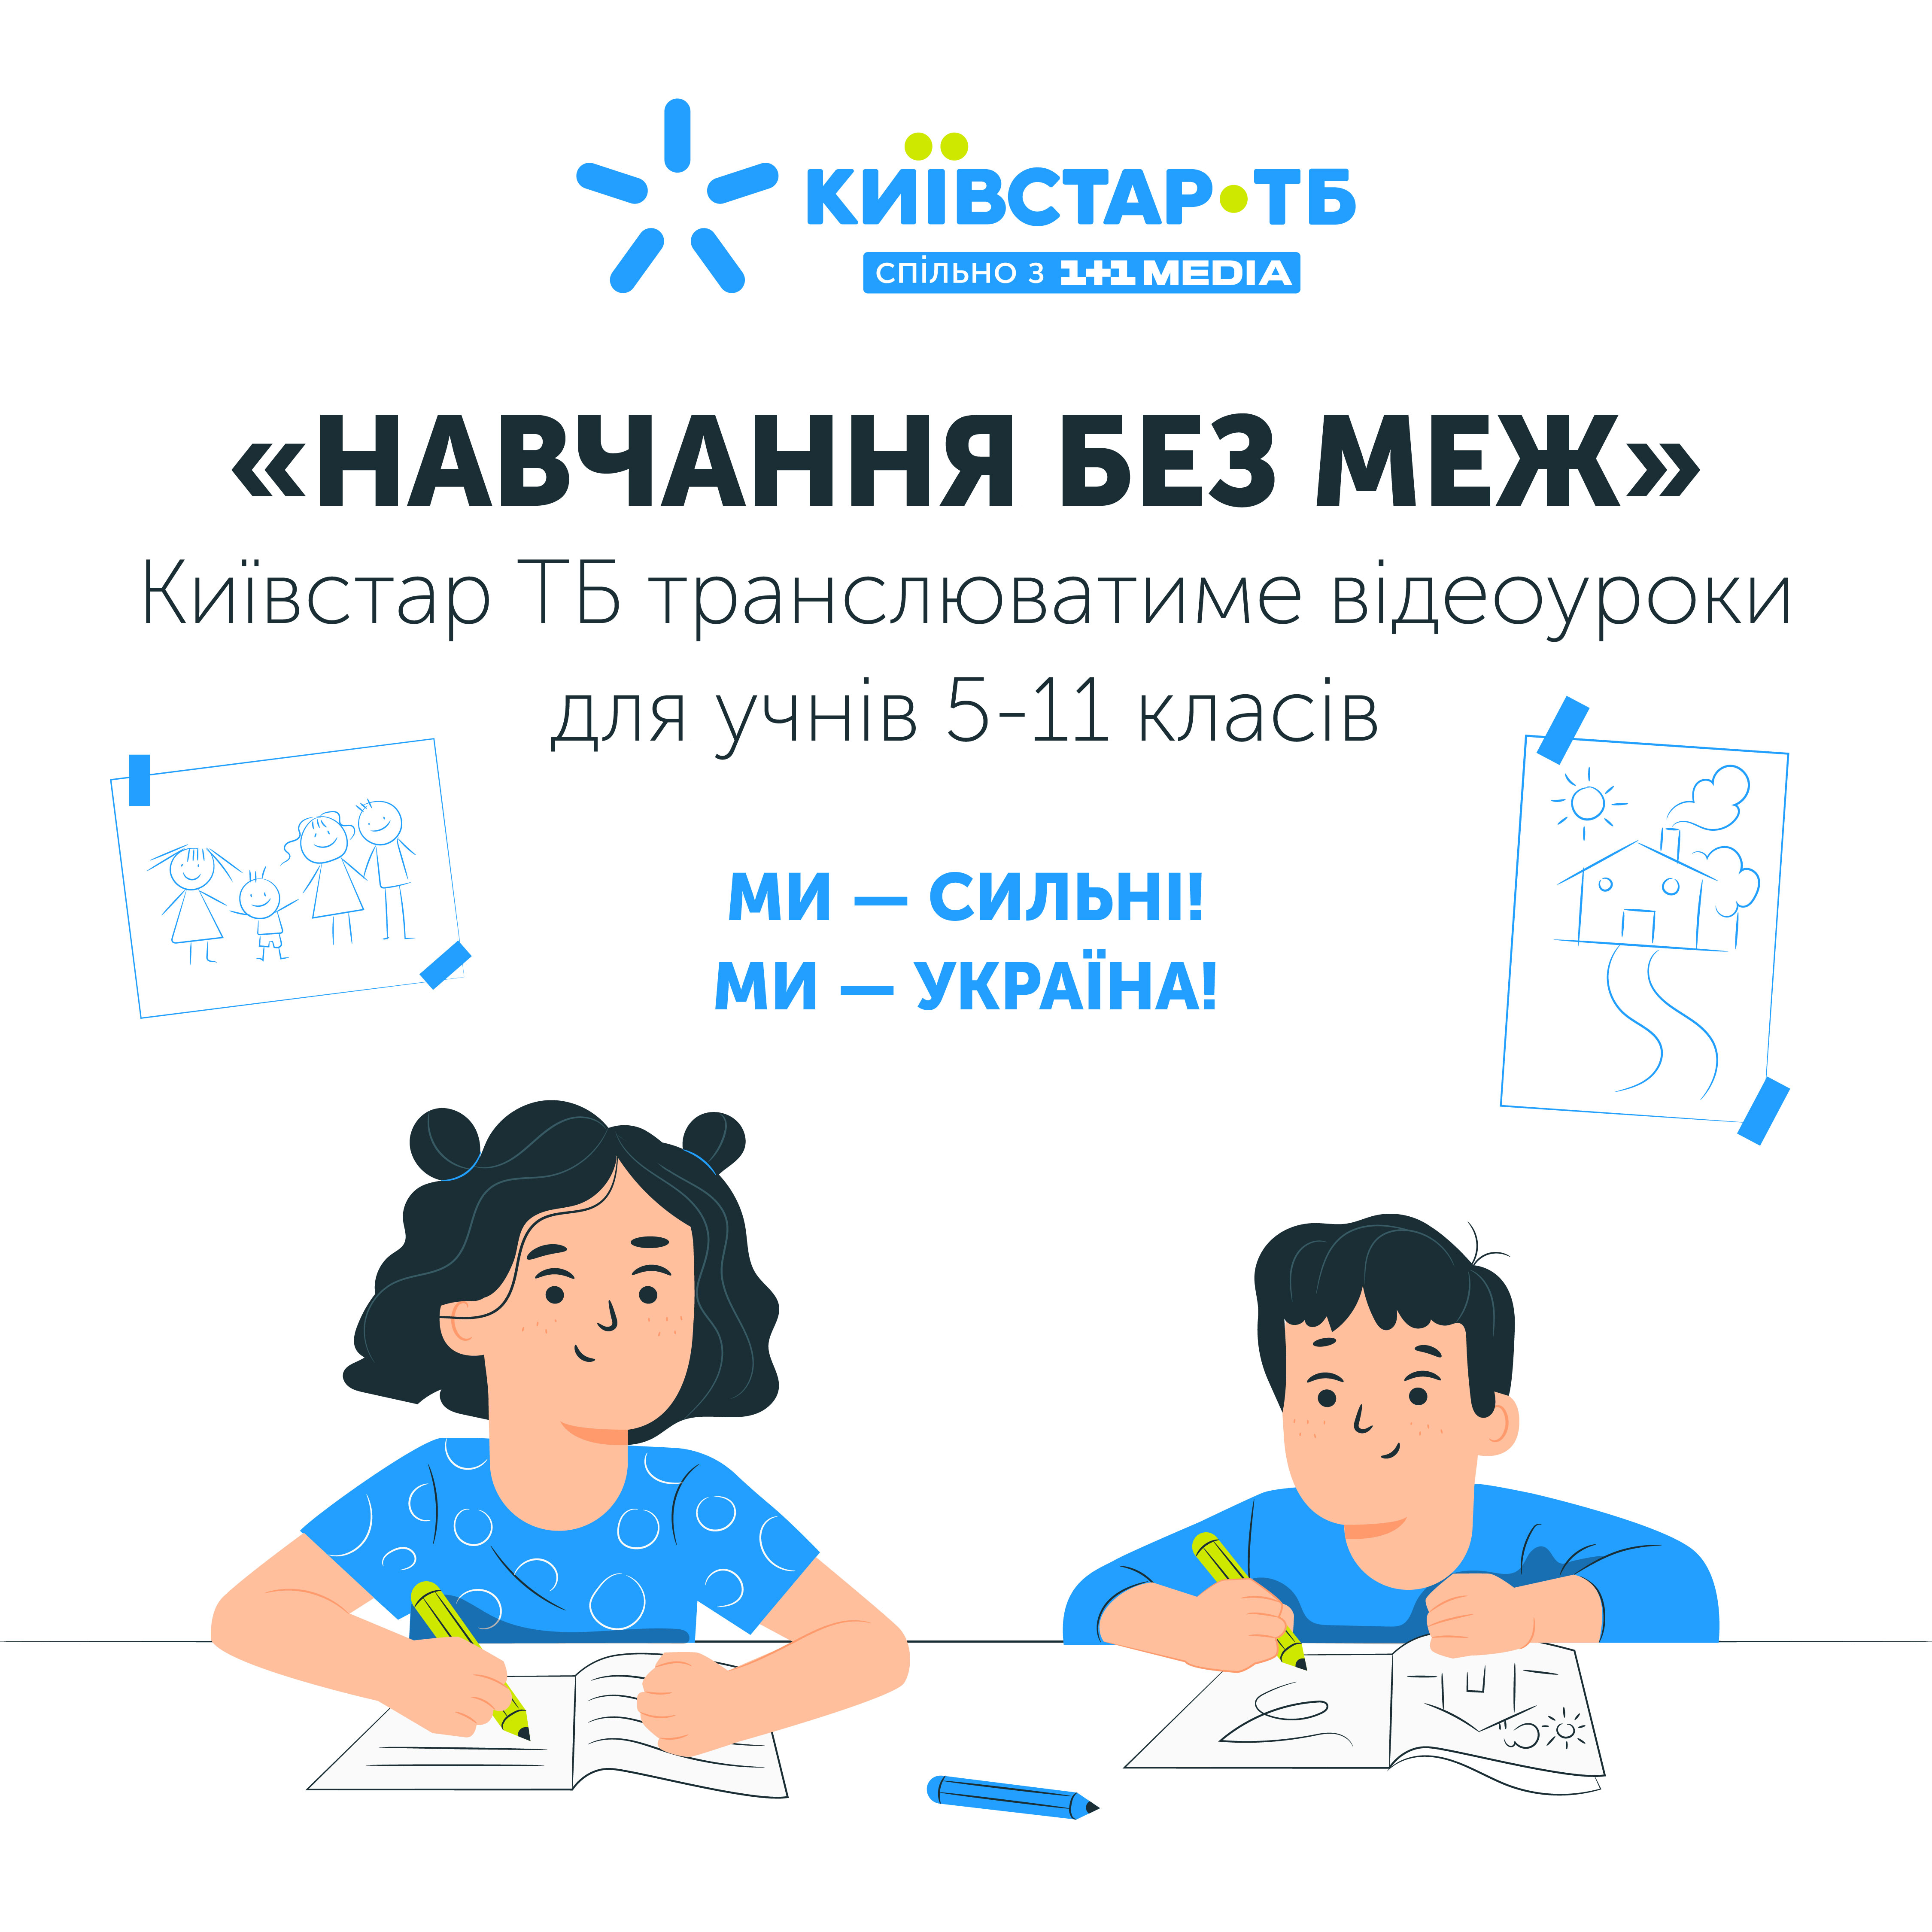 На Київстар ТБ доступні уроки з Всеукраїнської школи онлайн та інший контент для дистанційного навчання